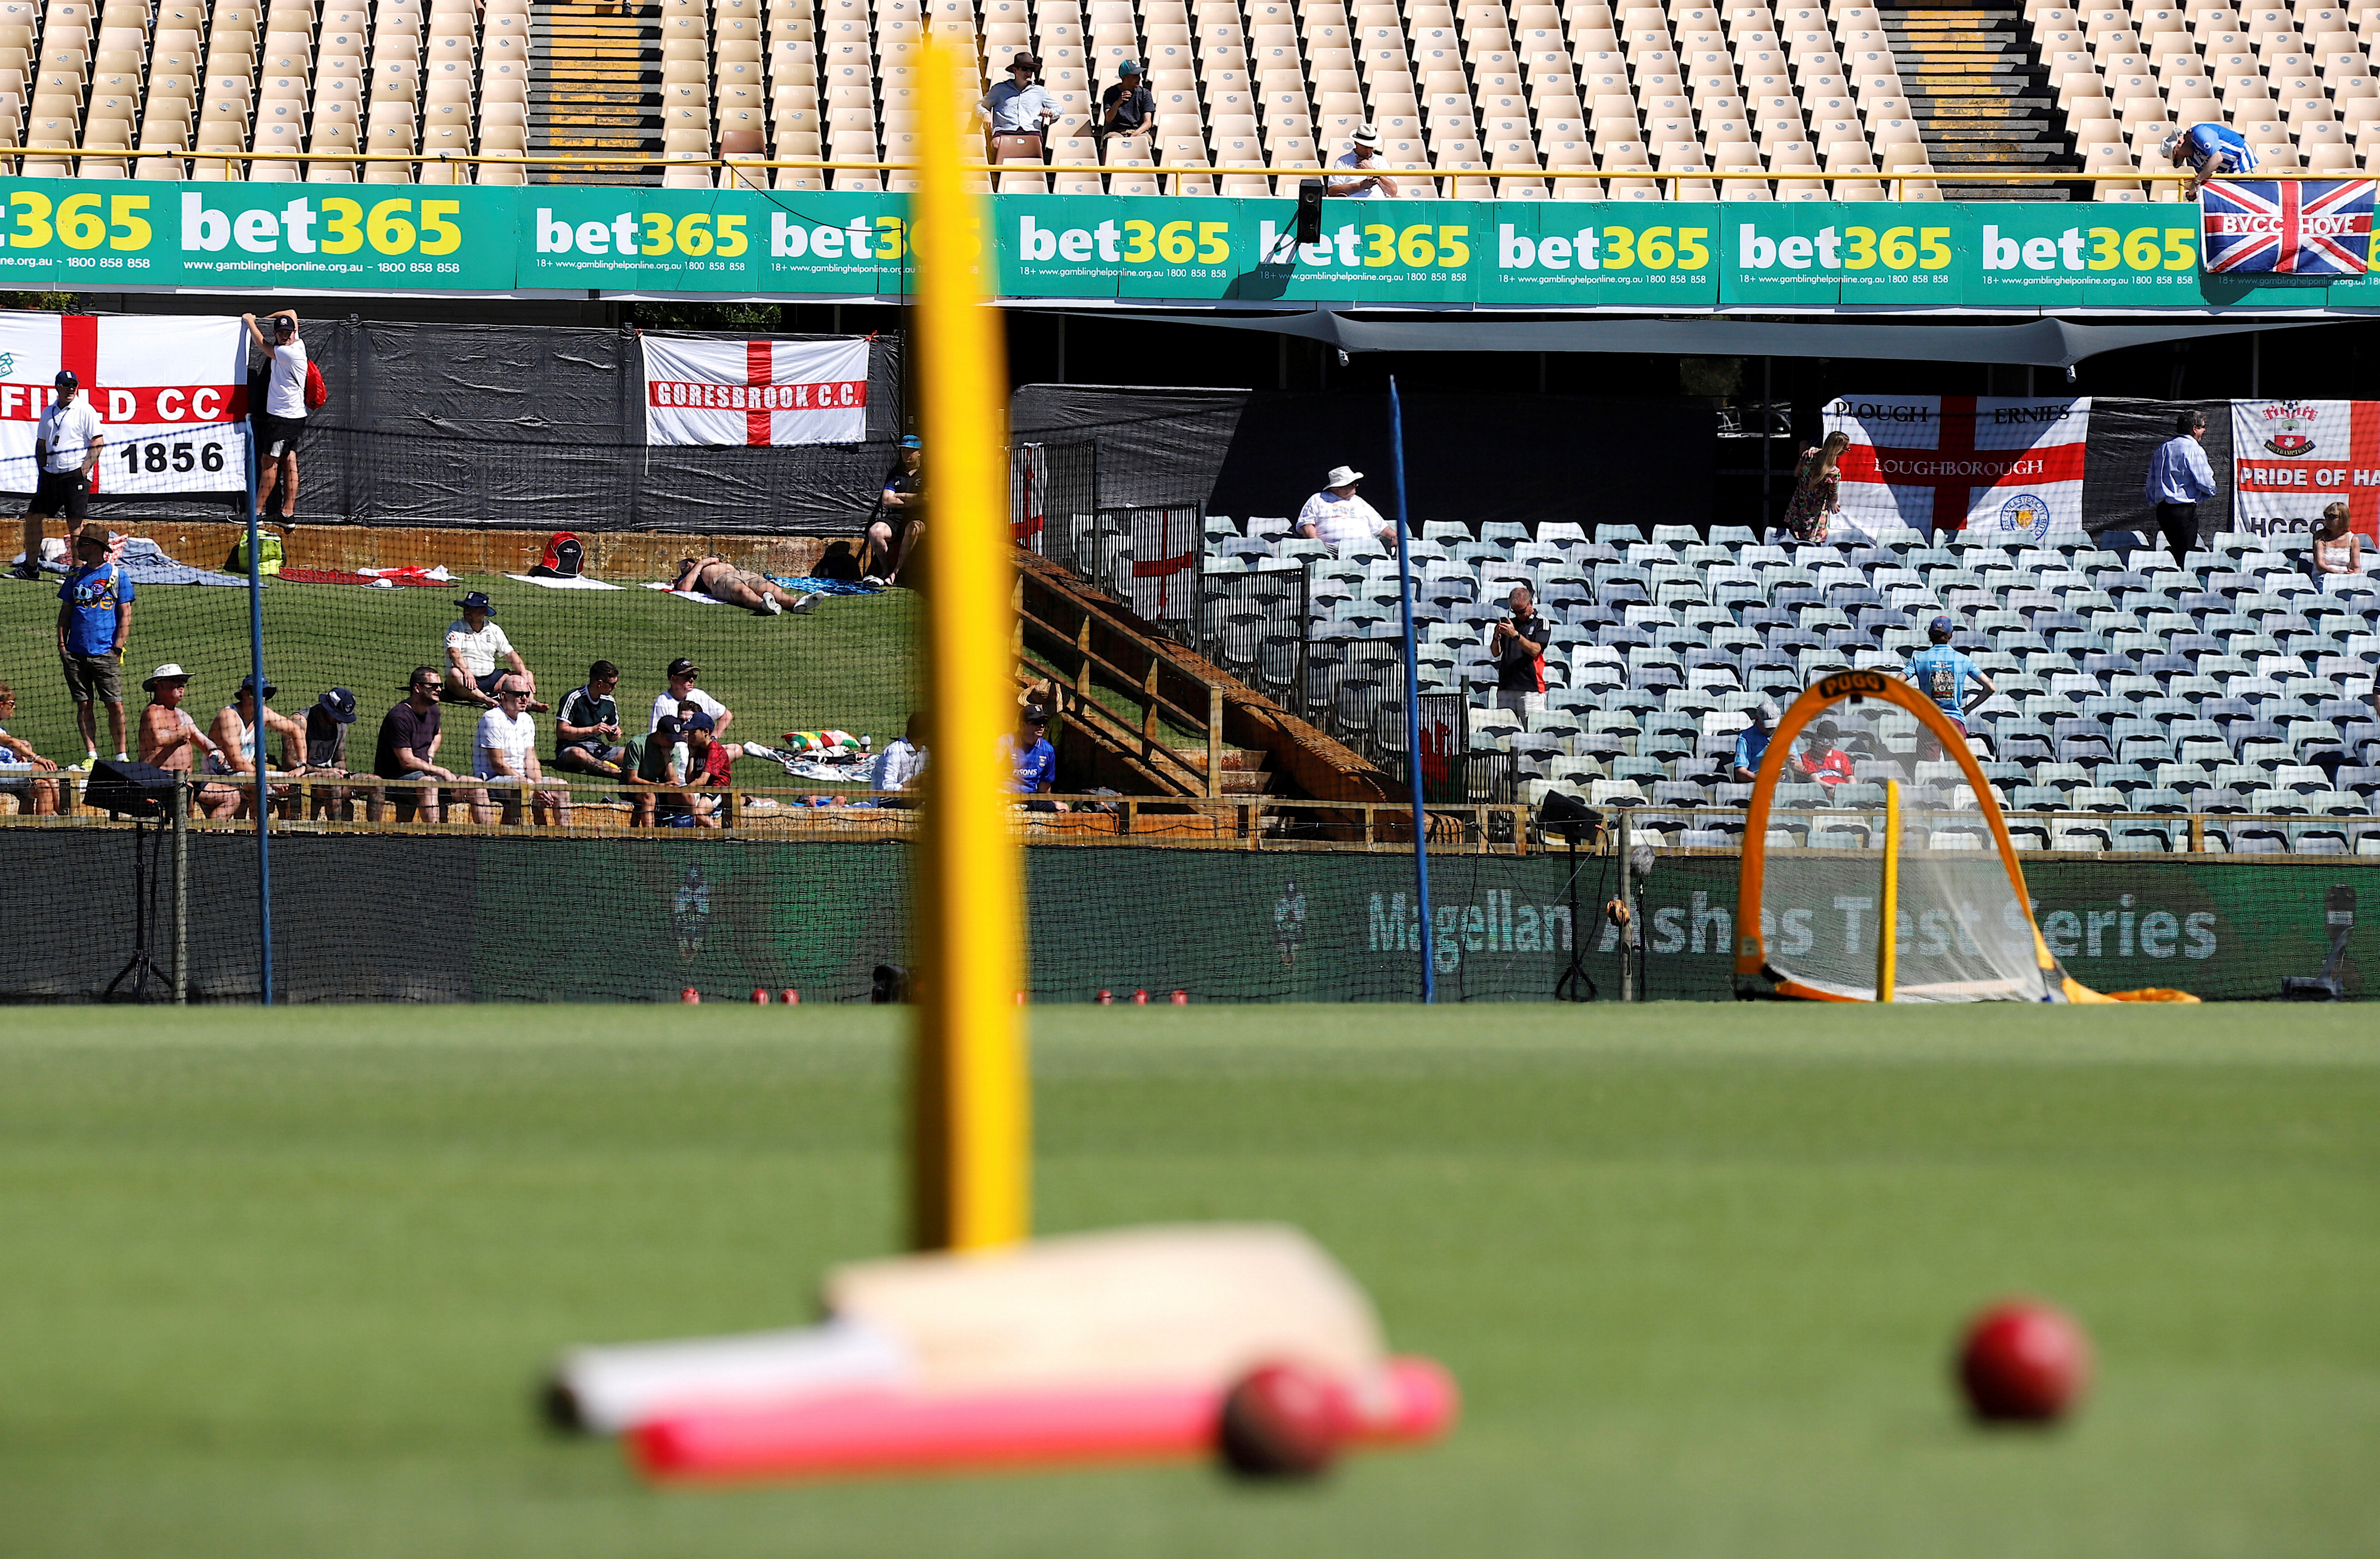 Cricket - Ashes test match - Australia v England - WACA Ground, Perth, Australia